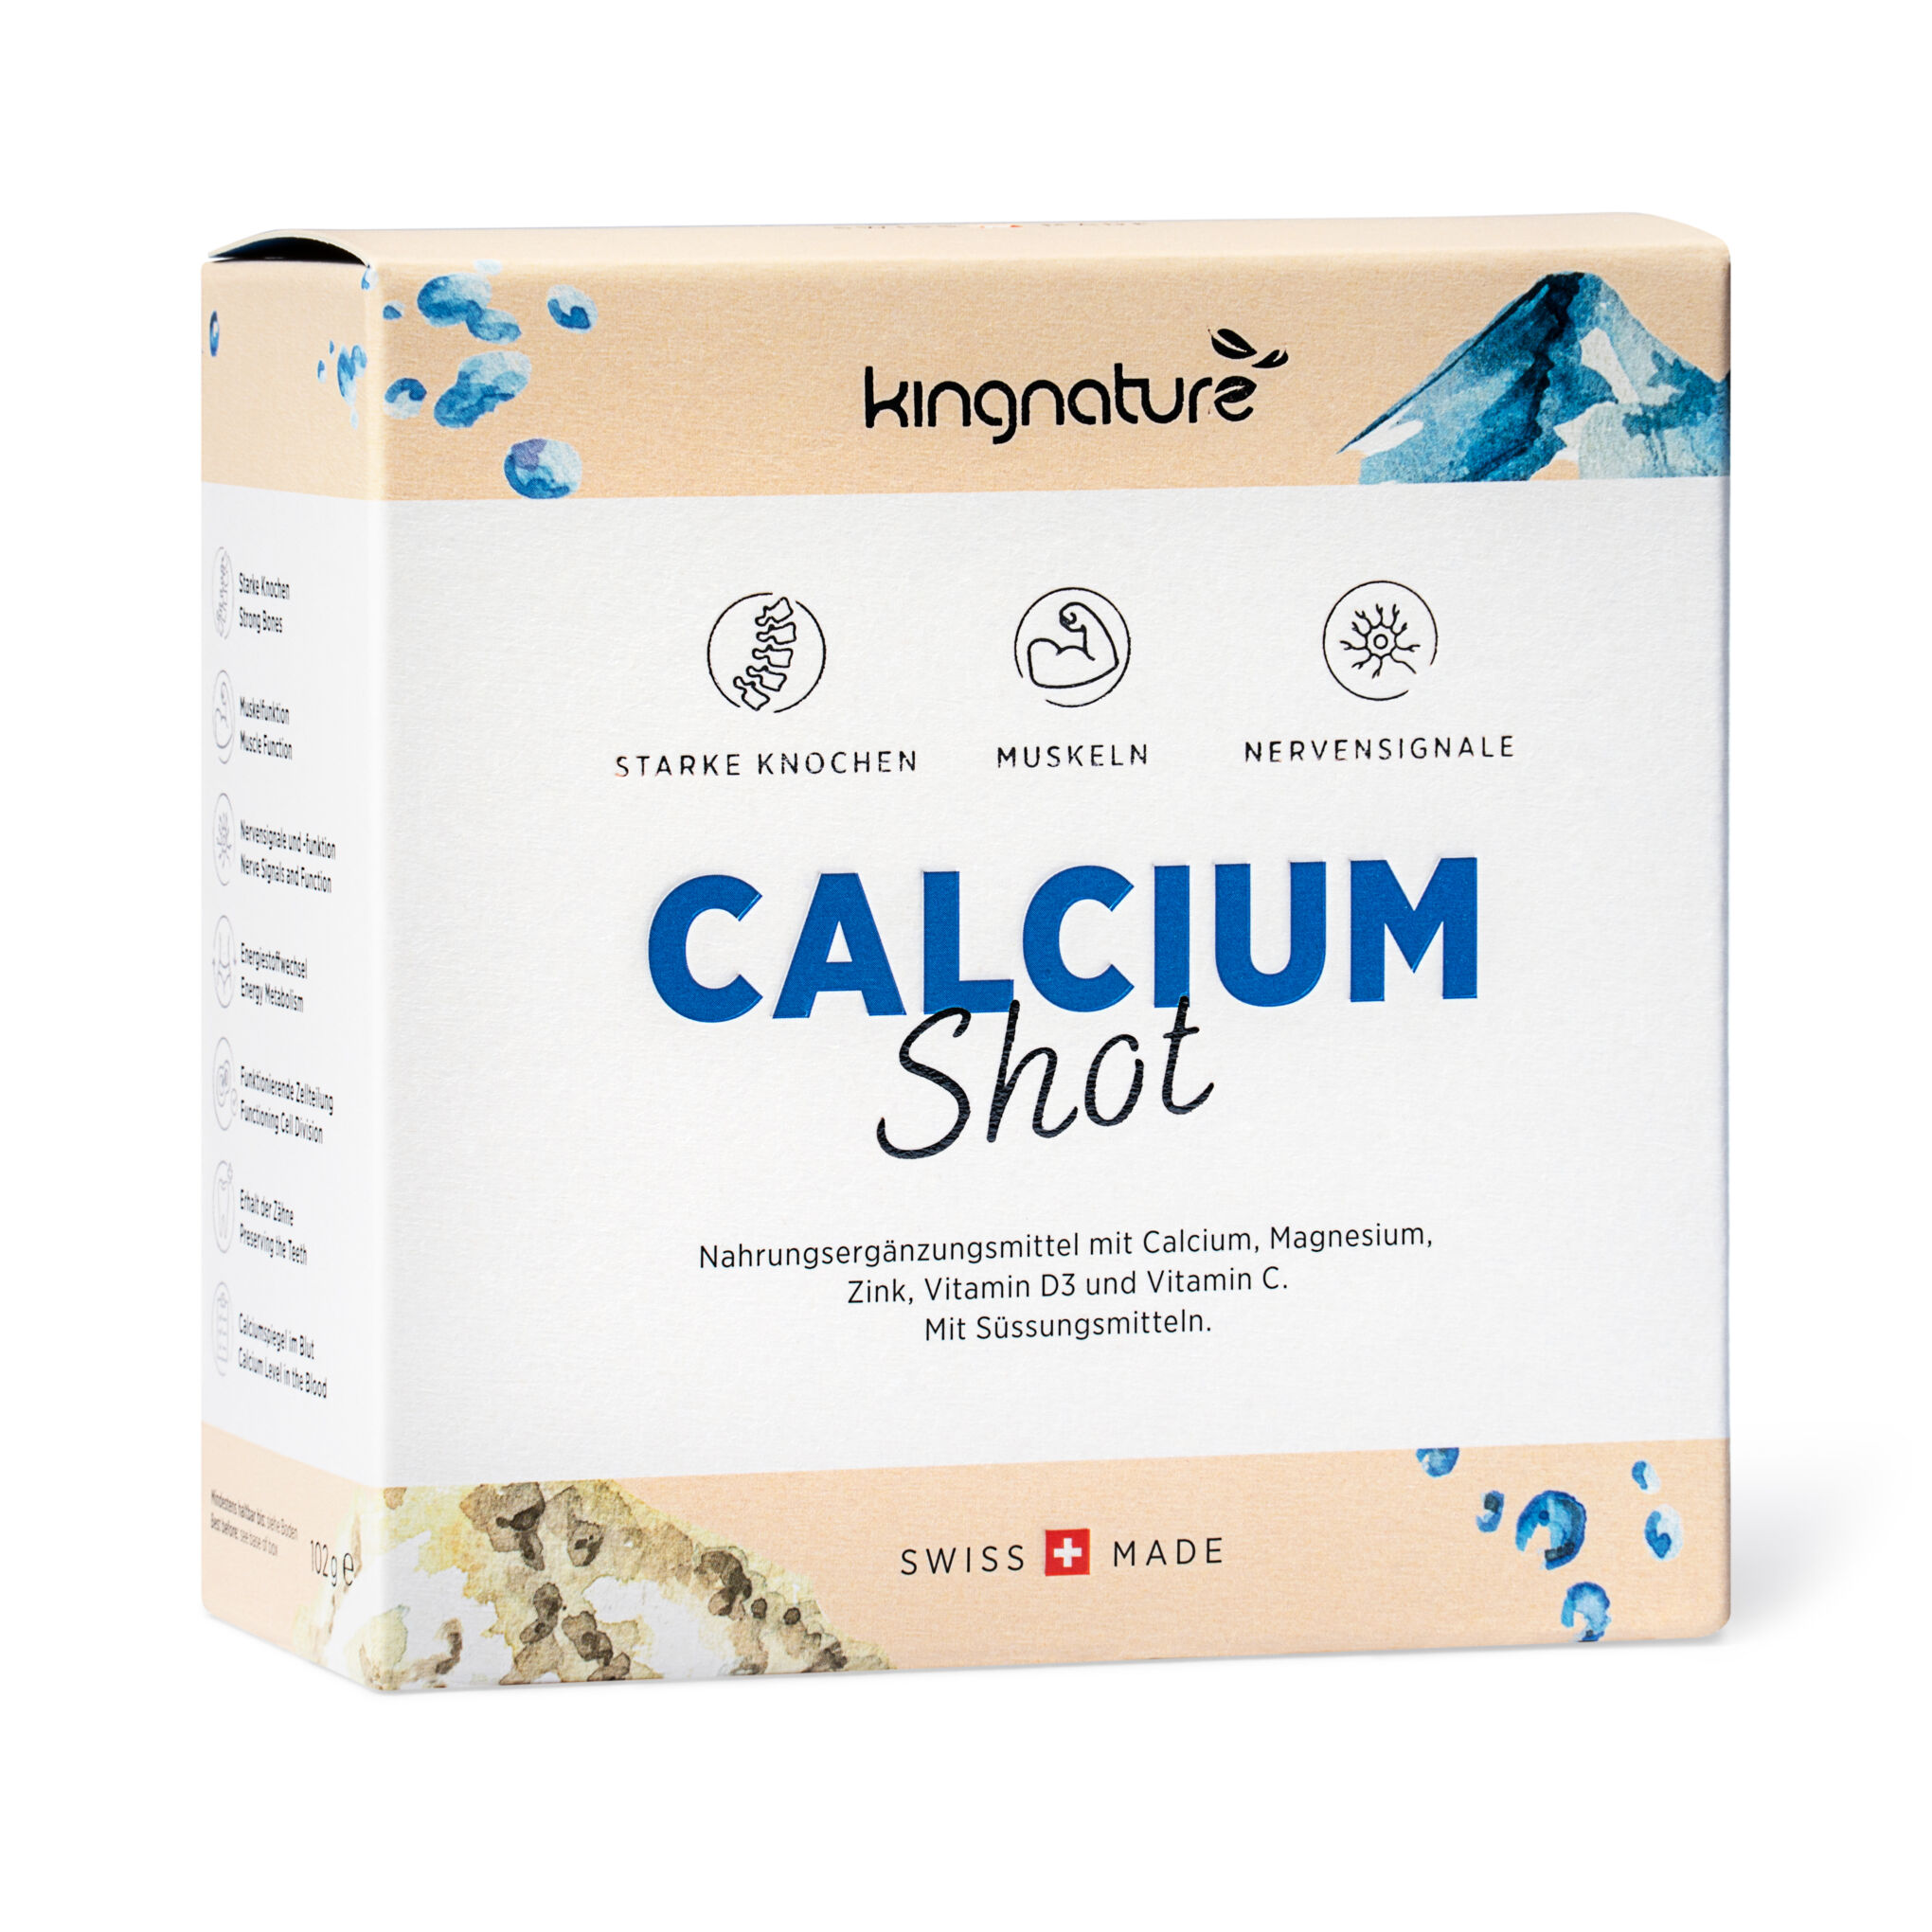  Calcium Shot